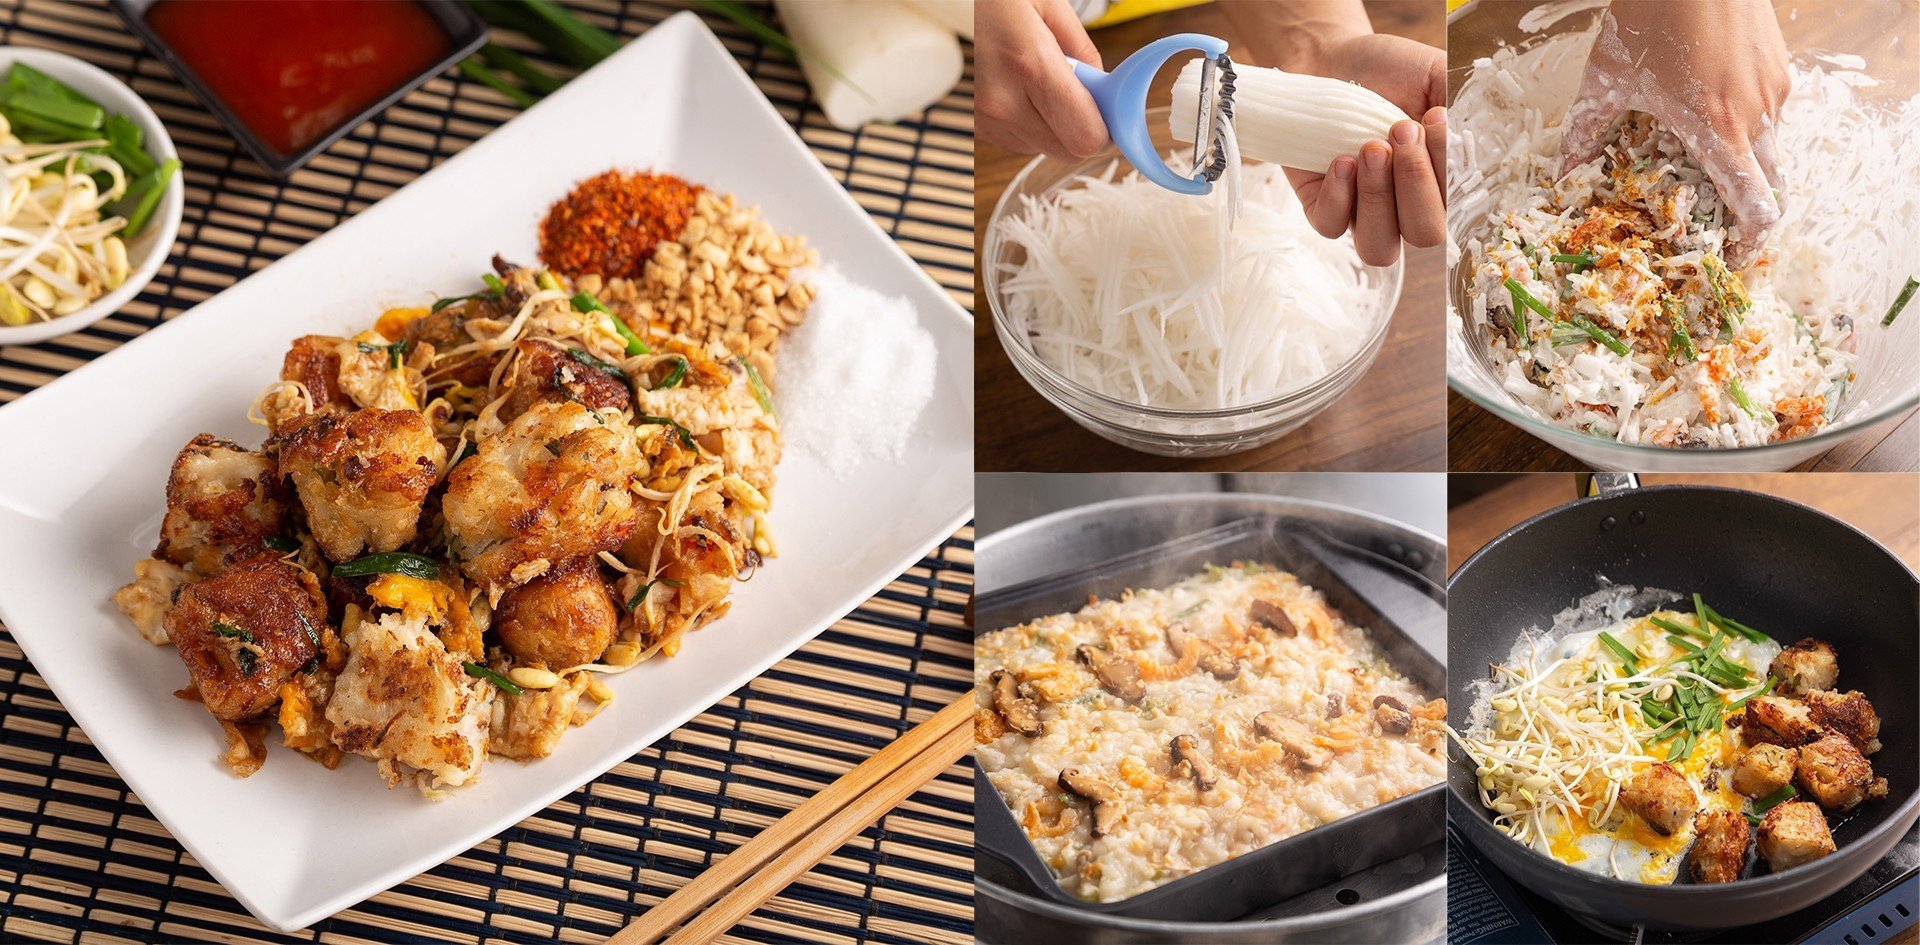 วิธีทำ “ขนมผักกาด” เมนูอาหารจีน ของไหว้เจ้าทำได้ง่าย ๆ แค่นึ่งทอดผัด